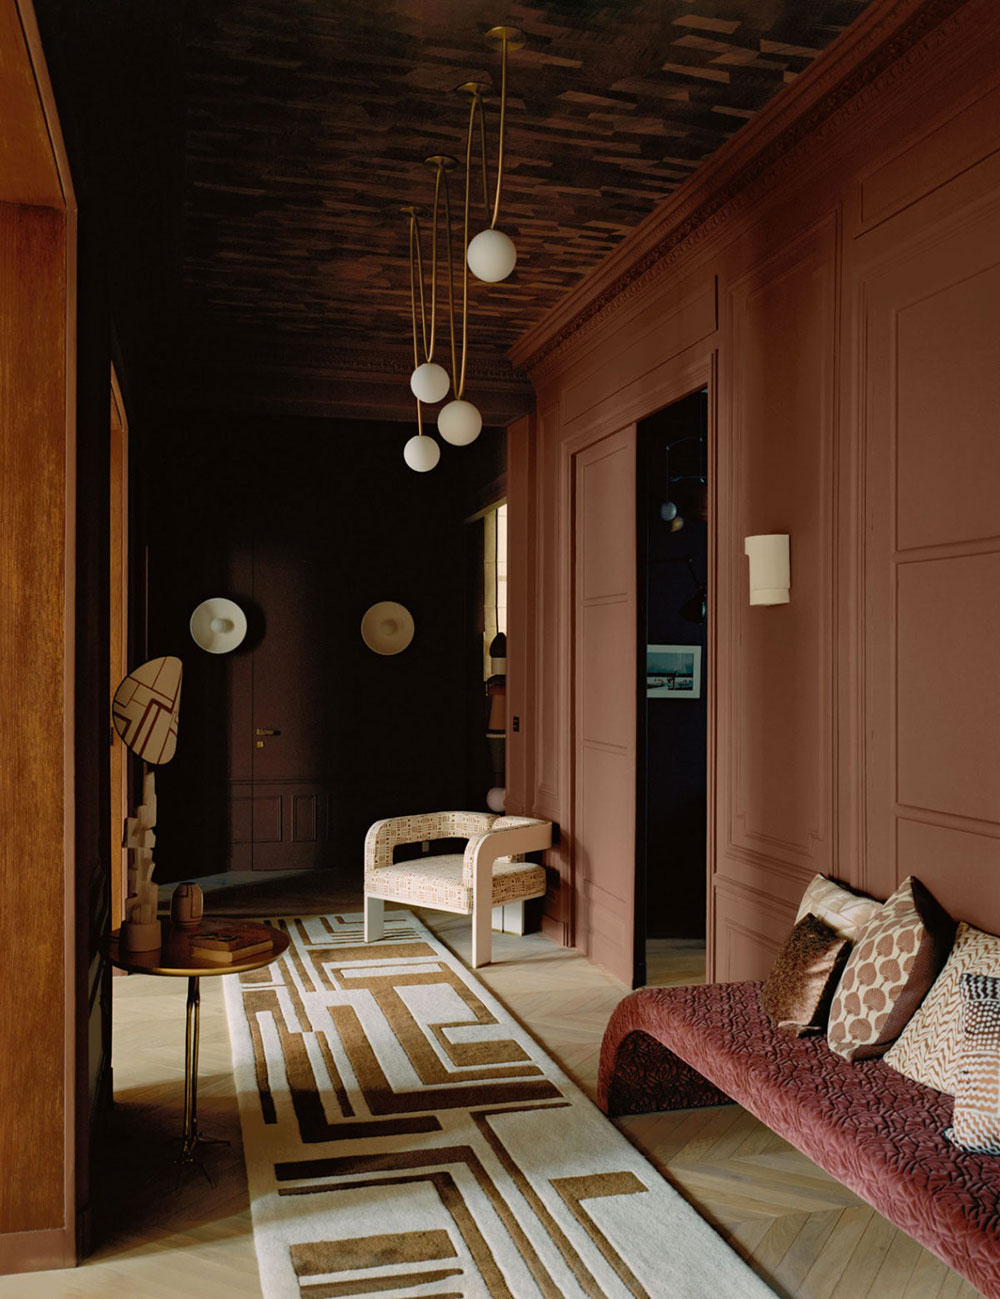 Прекрасная парижская квартира в коричневых тонах для семьи дизайнера